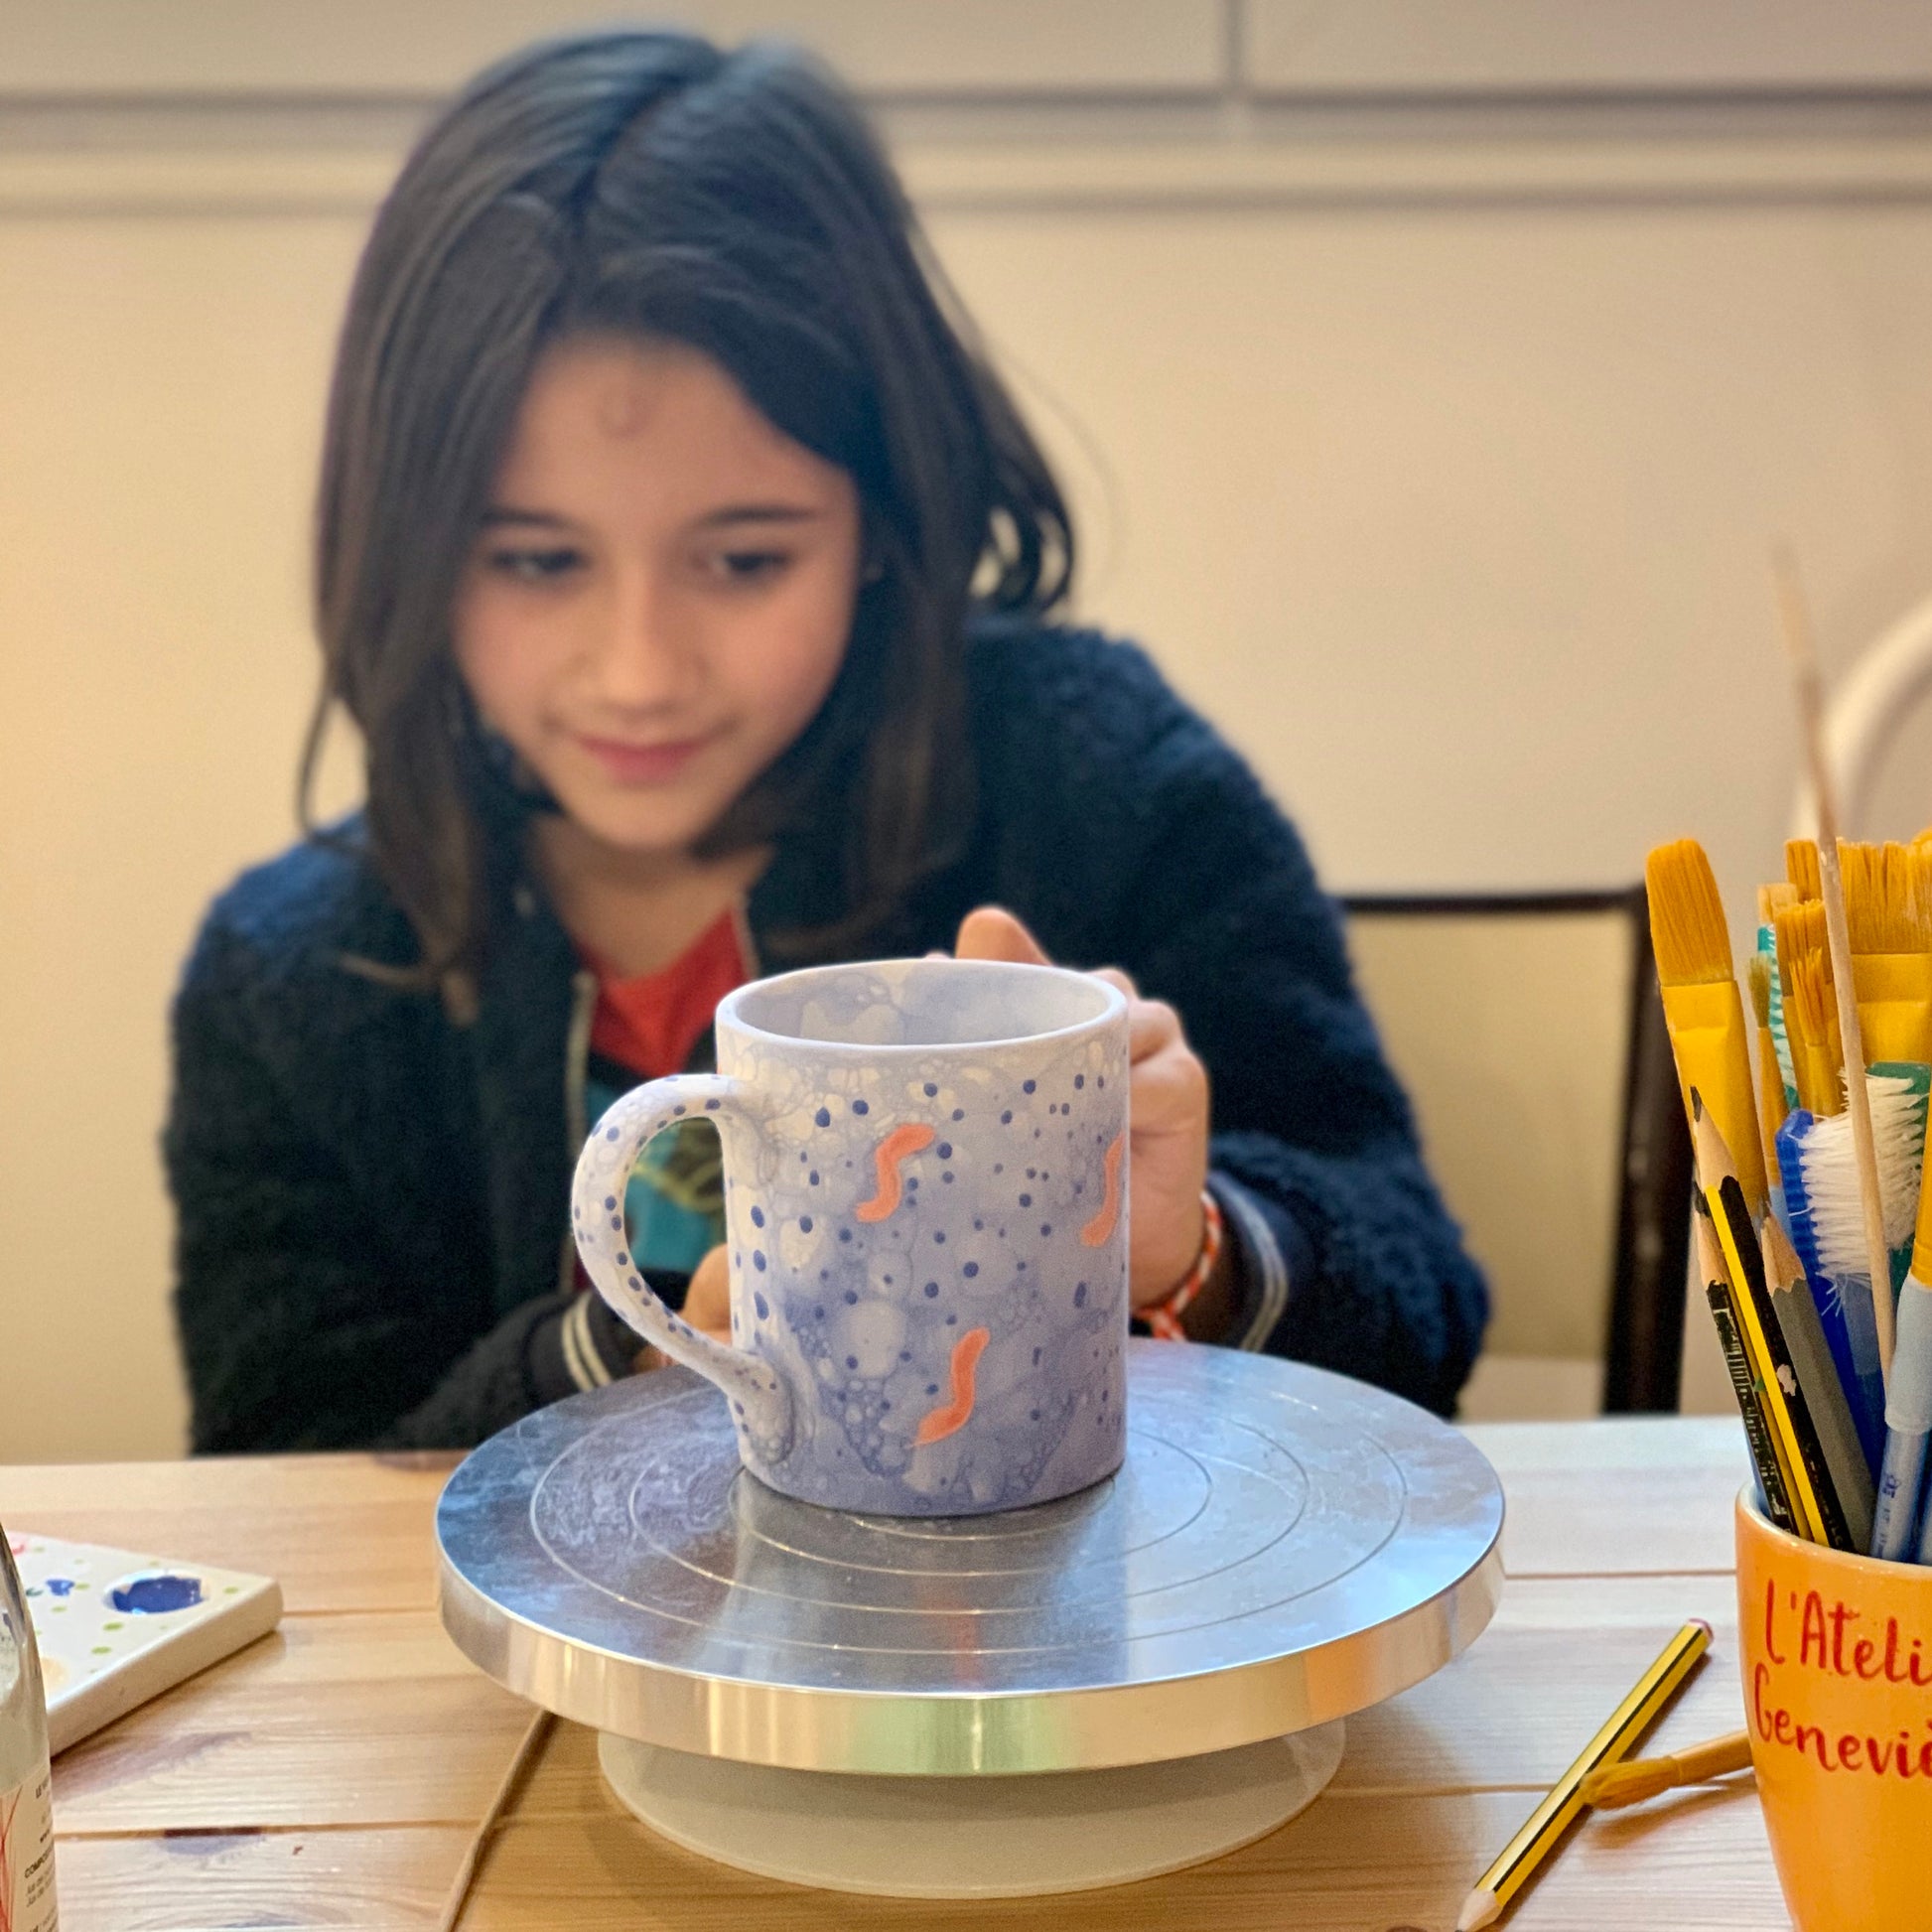 Créa'Poterie - Kit de création de poterie enfant 7 à 11 ans